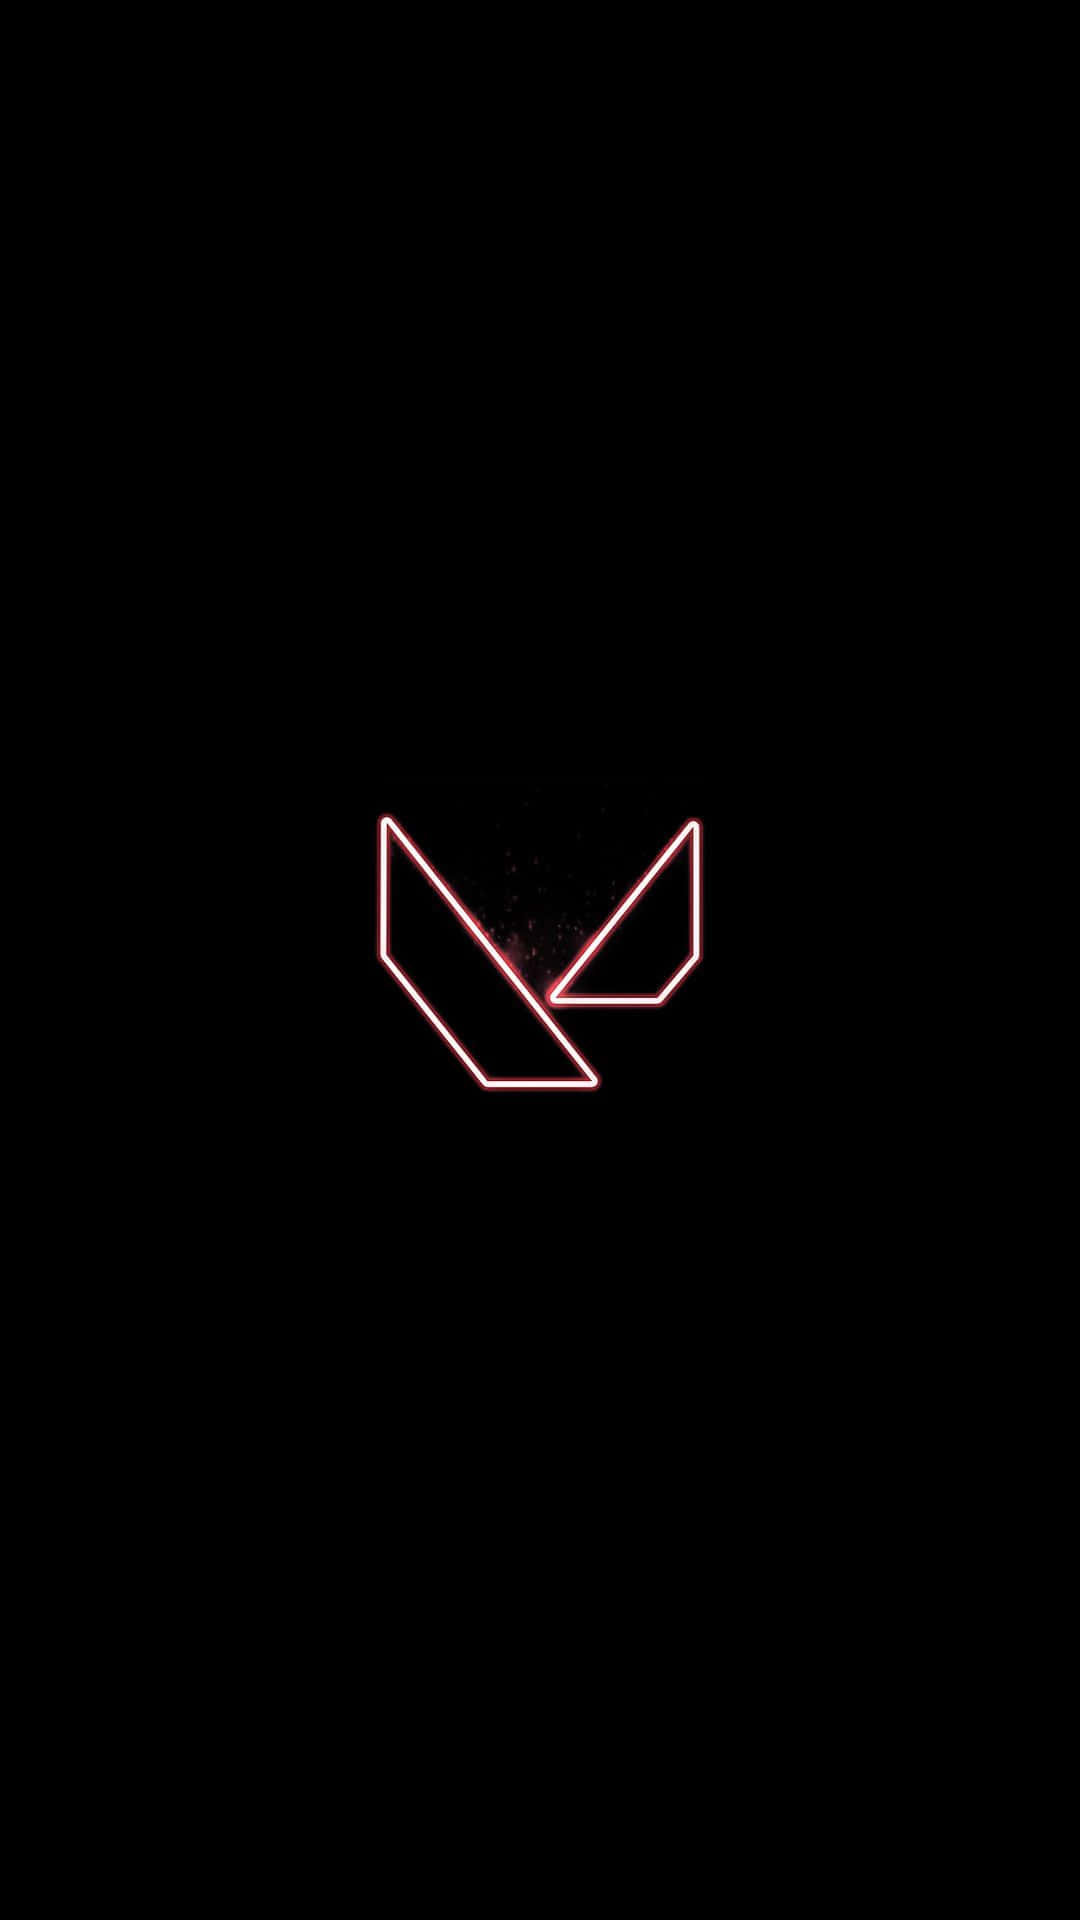 Neonrotes Licht Logo Iphone X Valorant Hintergrund